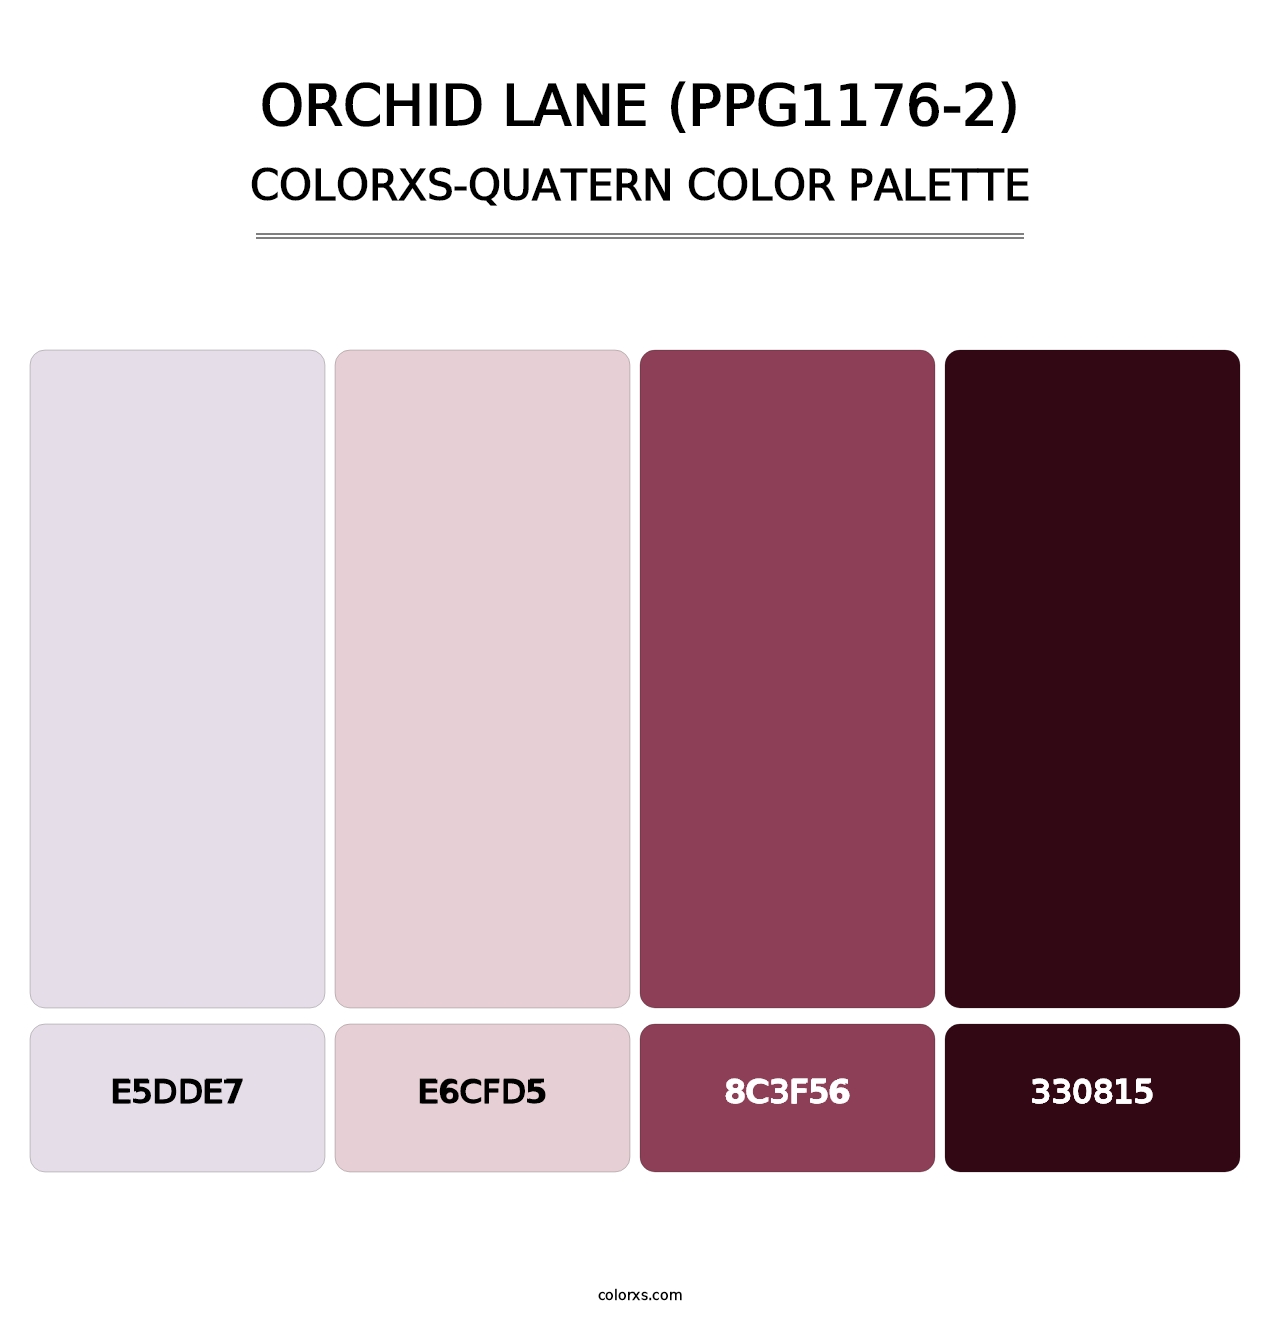 Orchid Lane (PPG1176-2) - Colorxs Quatern Palette